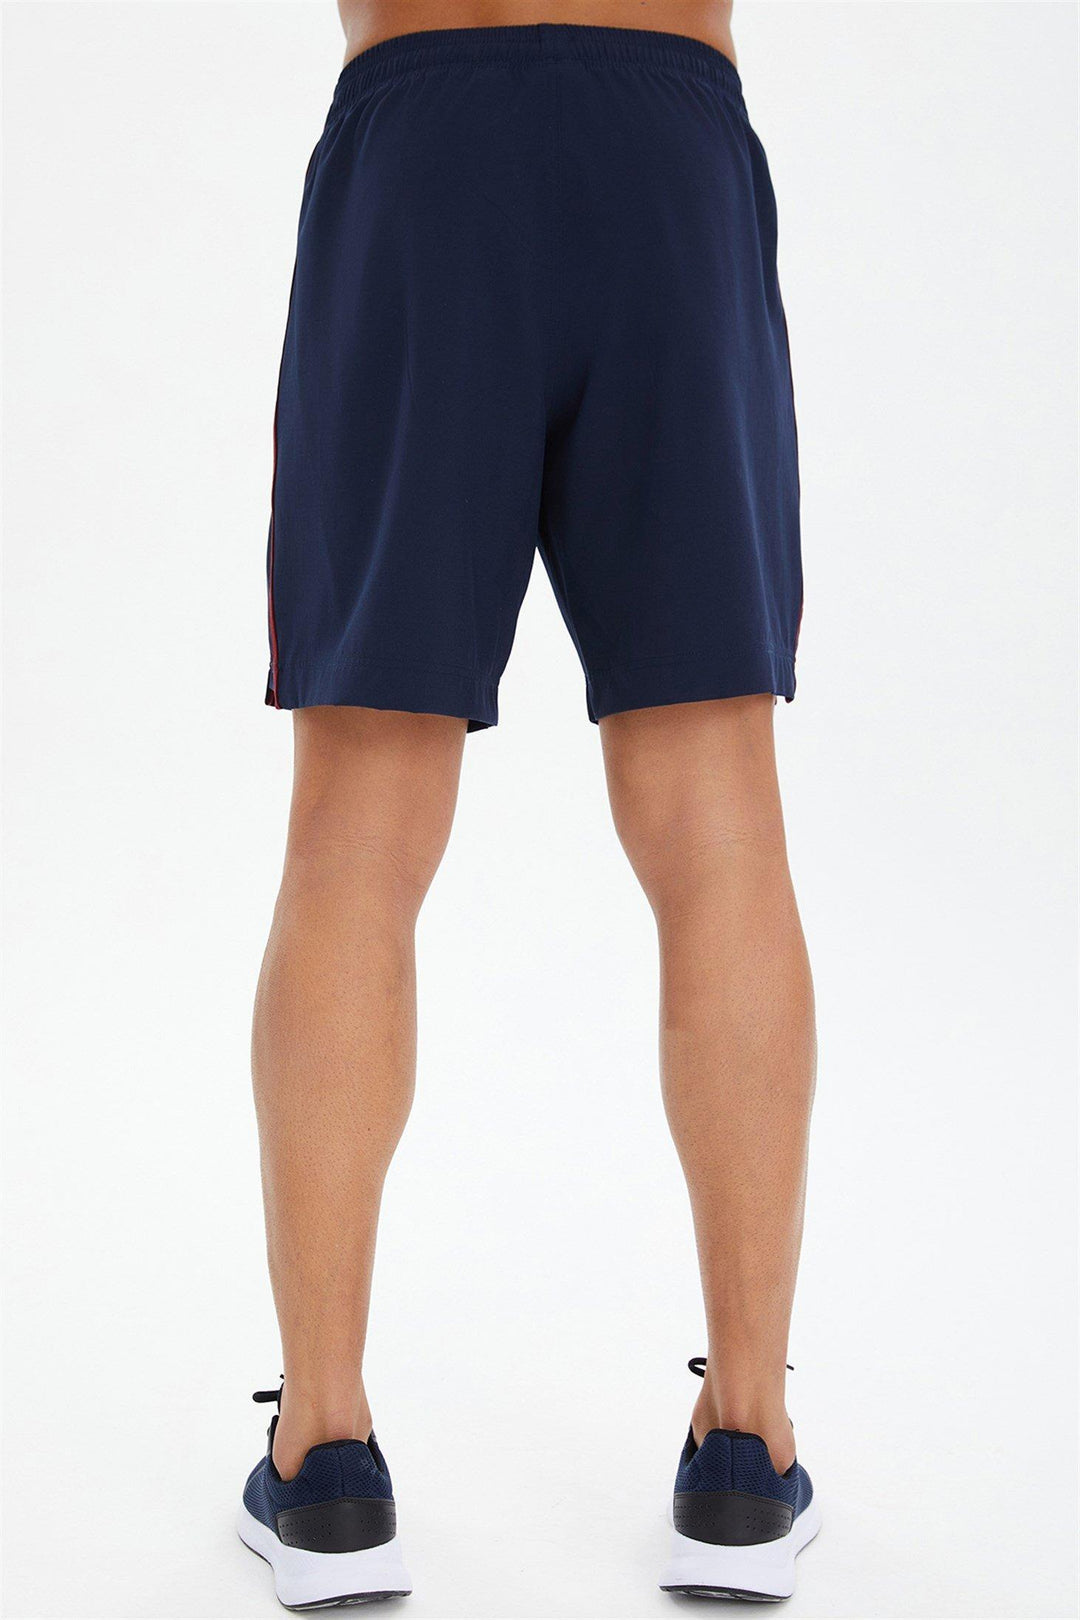 GYM-Shorts für Herren